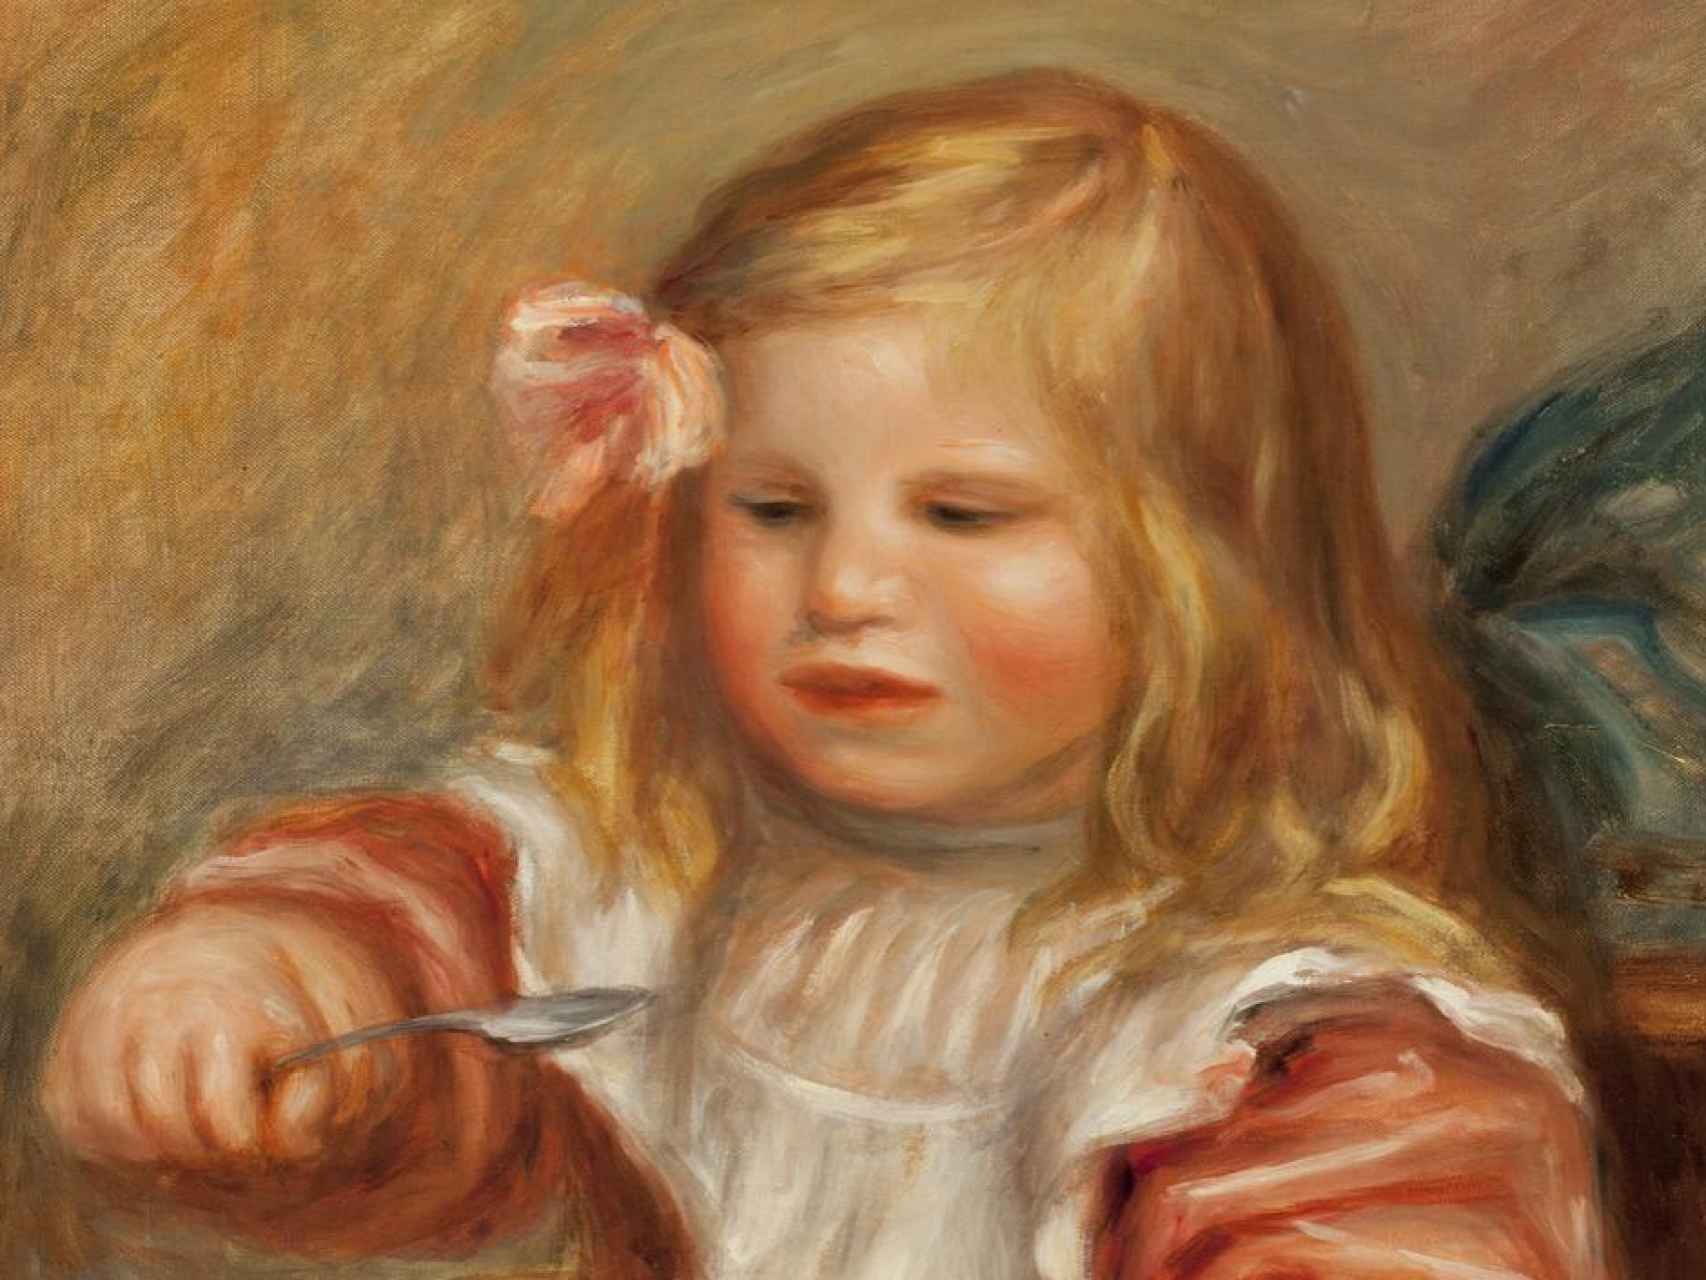 Coco tomando una sopa, el hijo de Renoir que retrató a los 60 años.